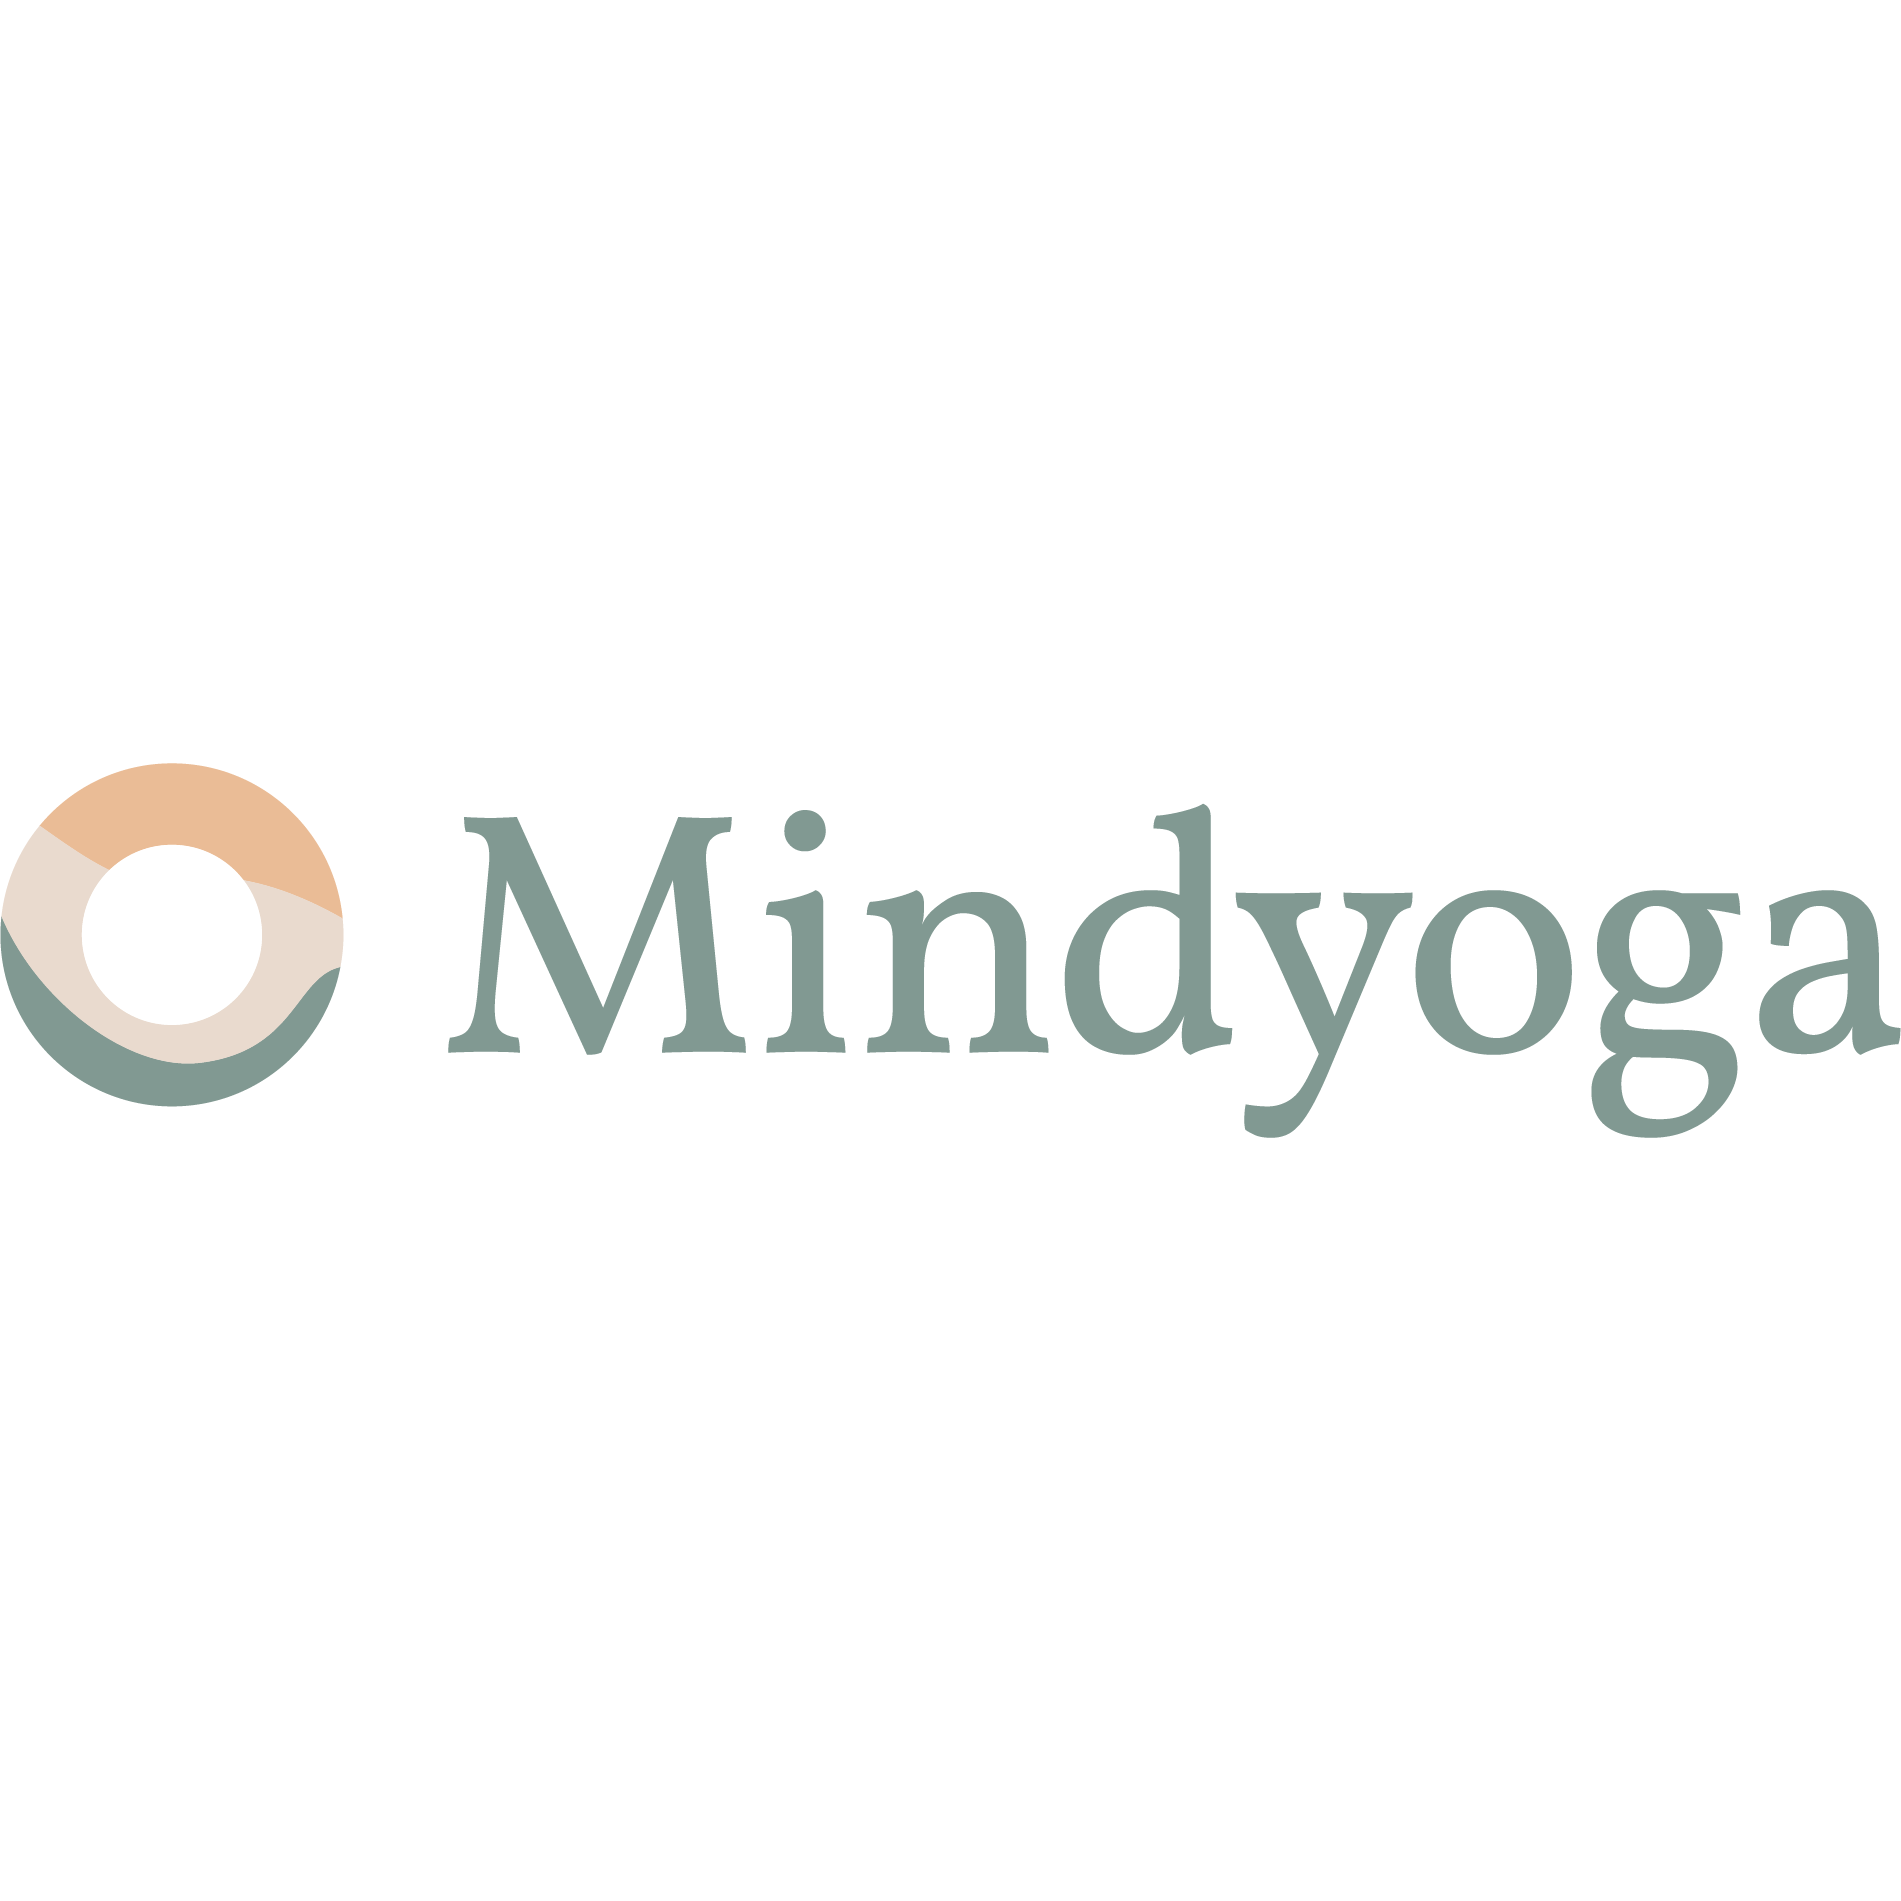 Mindyoga - Individualtherapie für mentale Gesundheit Logo